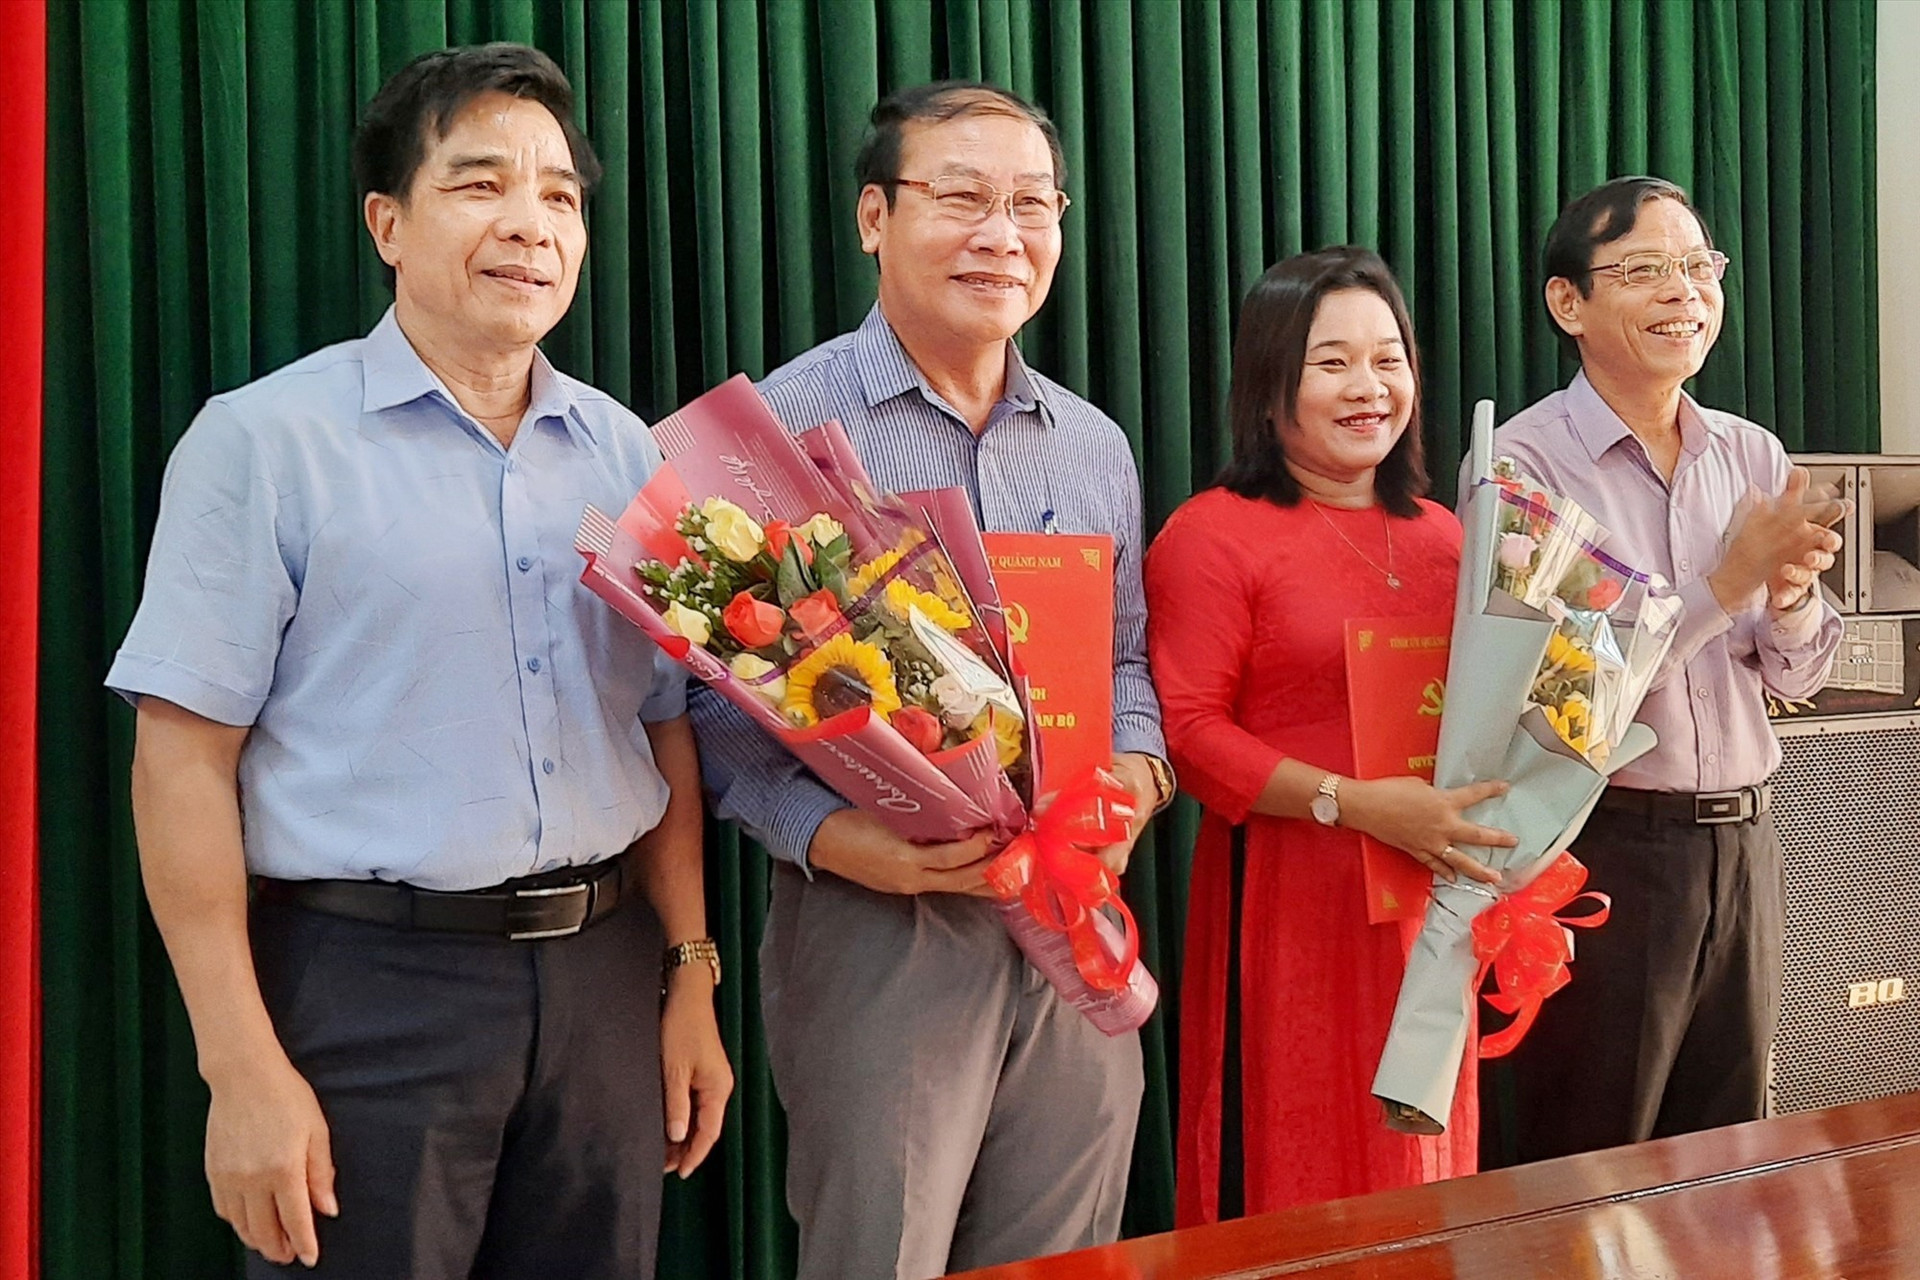 Lãnh đạo Tỉnh ủy trao quyết định điều động, bổ nhiệm bà Huỳnh Thị Thùy Dung giữ chức vụ Trưởng ban Dân vận Tỉnh ủy. Ảnh: ĐOÀN ĐẠO